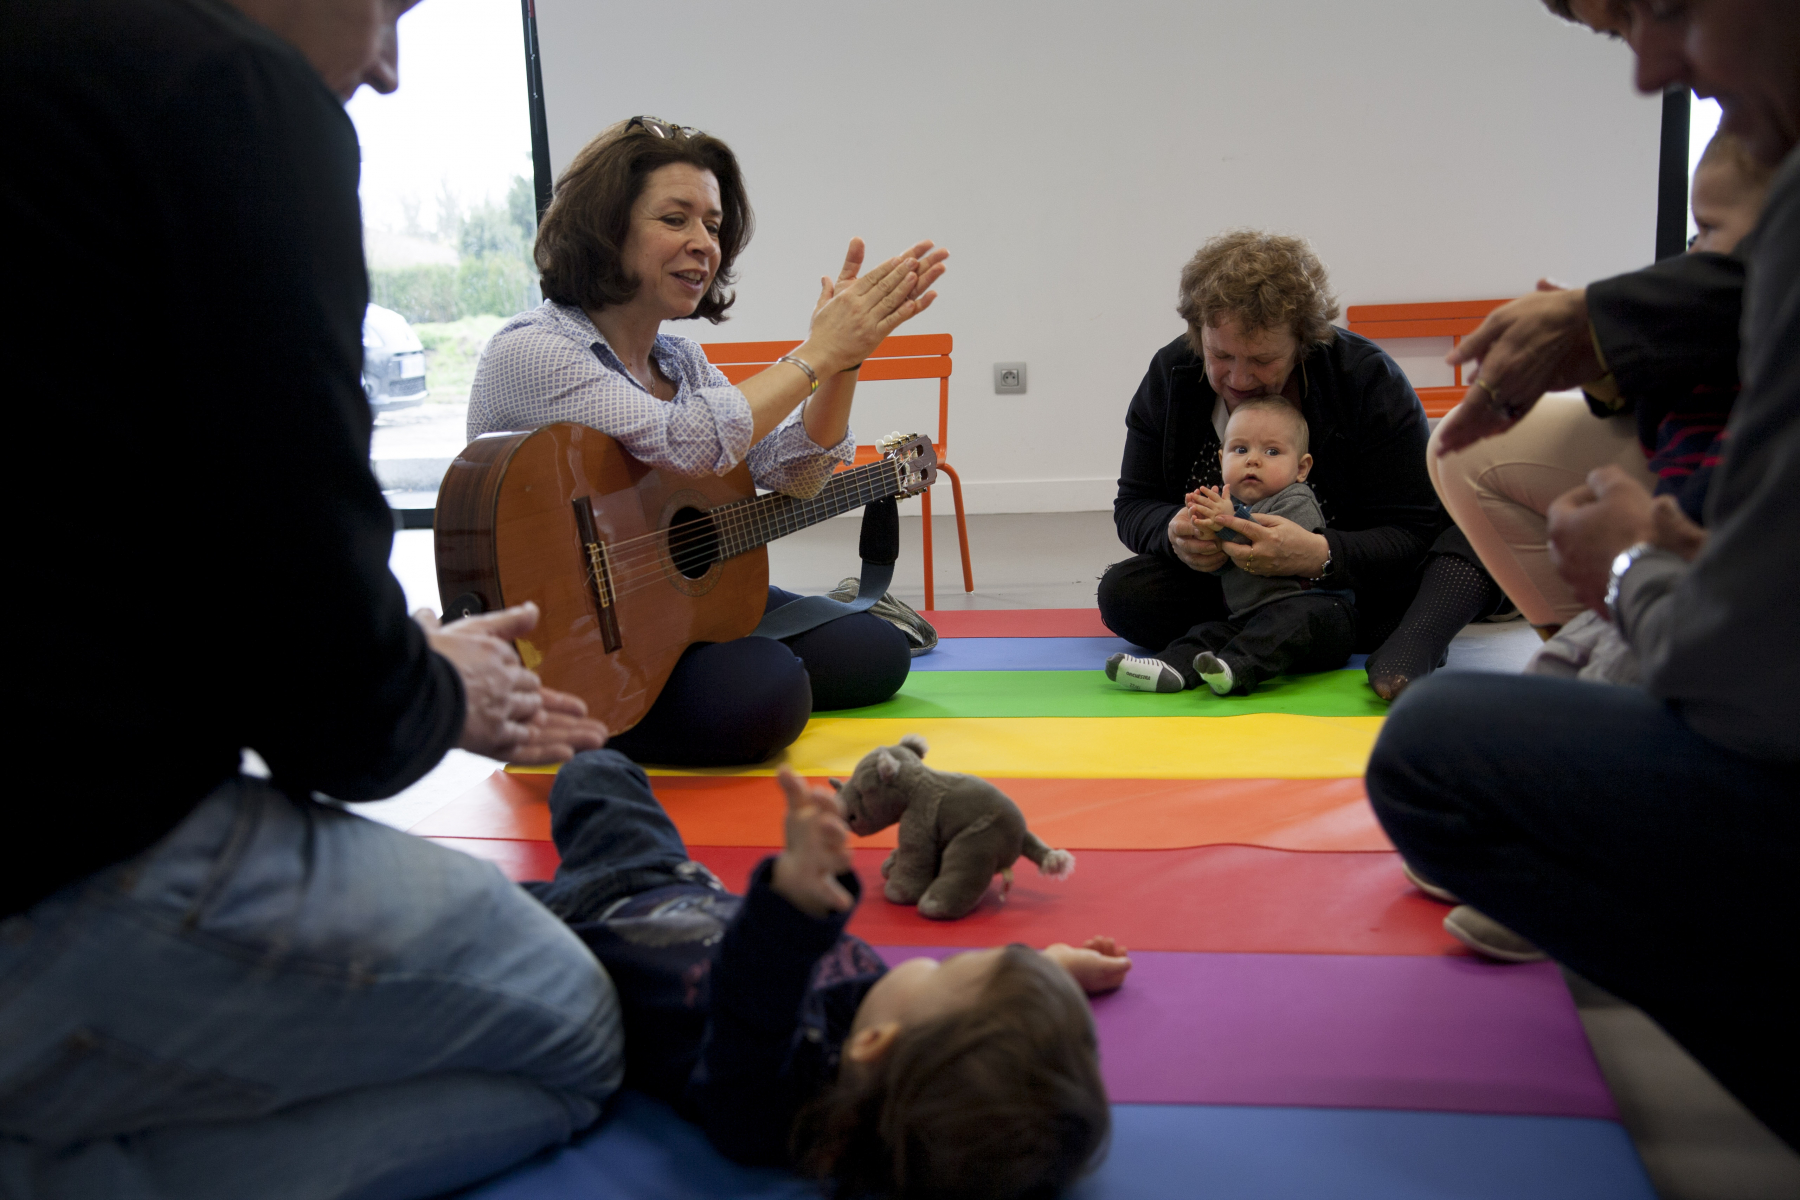 Une dame avec une guitare regarde un bébé sur un tapis